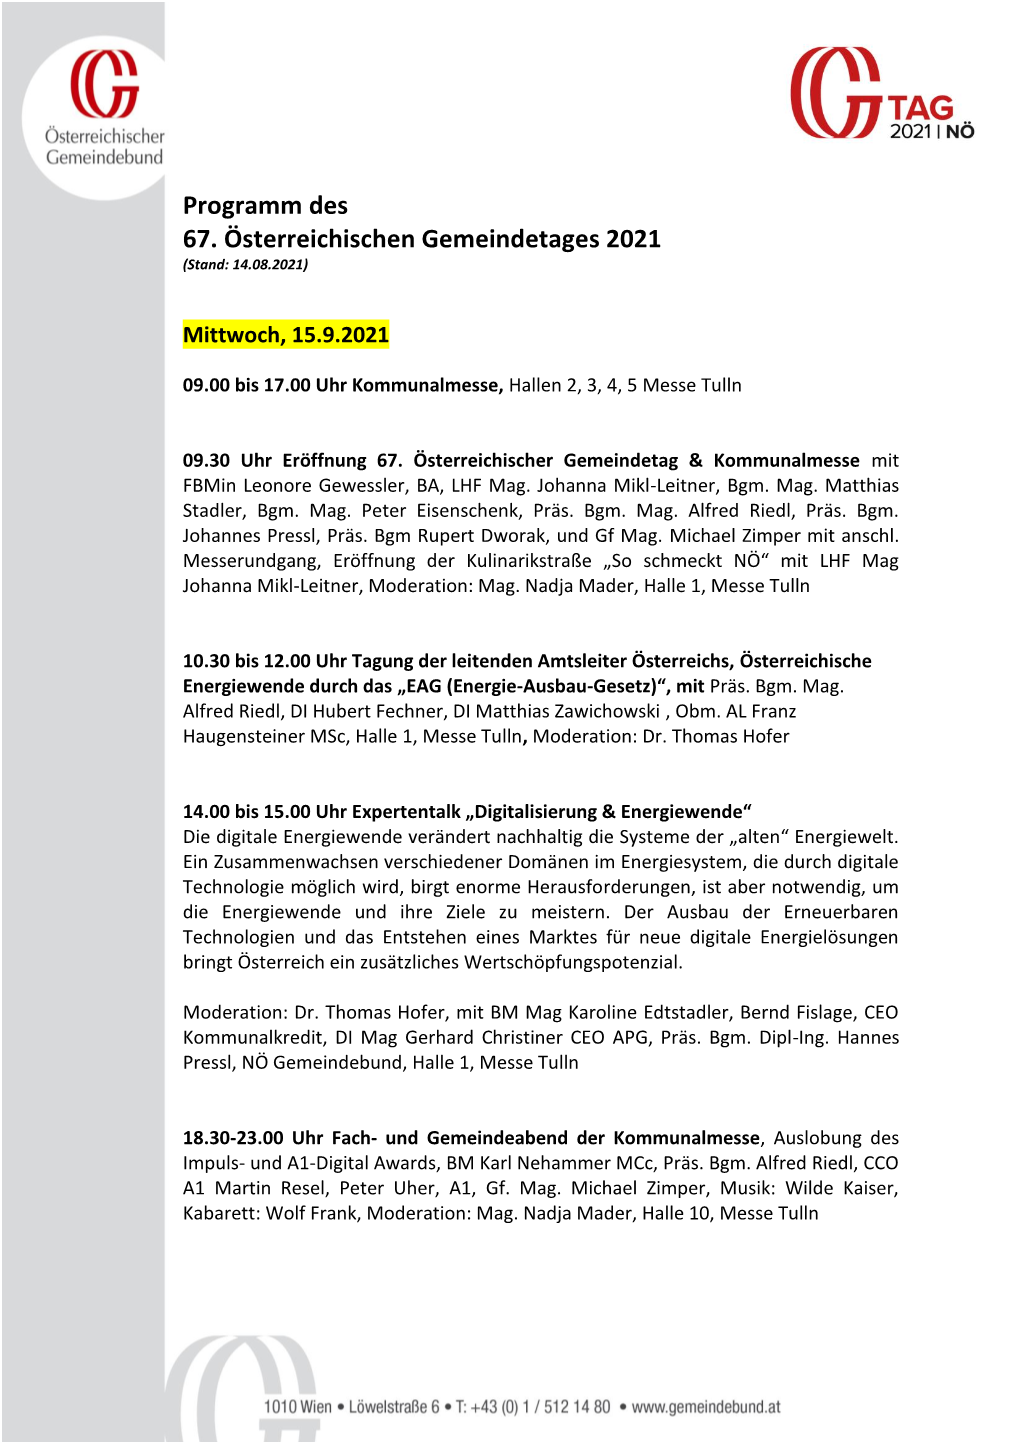 Programm Des 67. Österreichischen Gemeindetages 2021 (Stand: 14.08.2021)